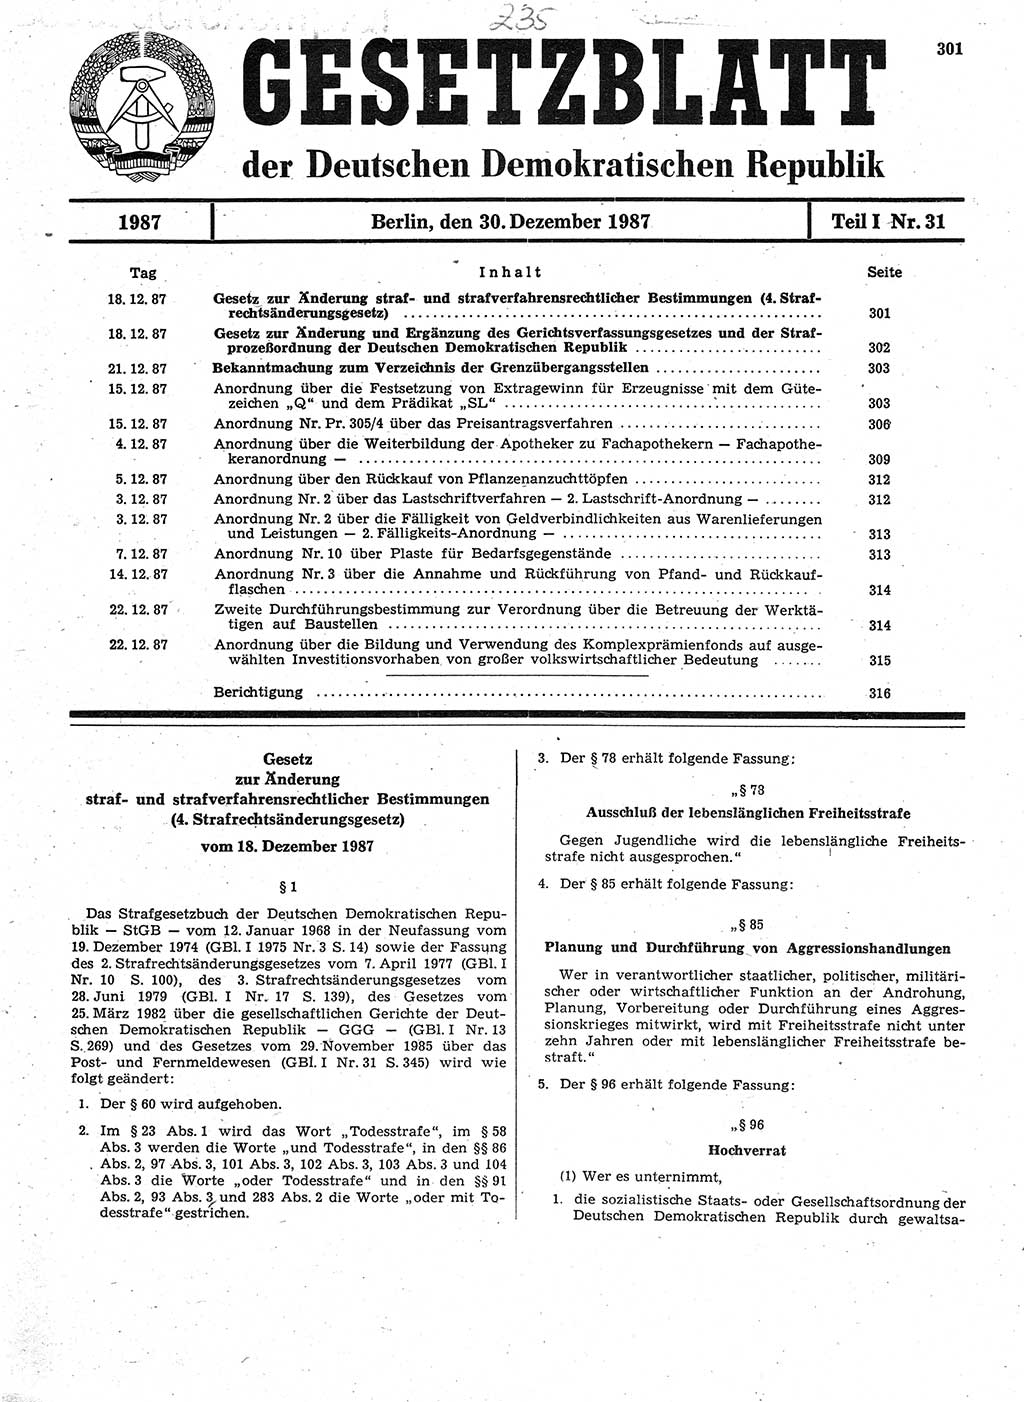 Gesetzblatt (GBl.) der Deutschen Demokratischen Republik (DDR) Teil Ⅰ 1987, Seite 301 (GBl. DDR Ⅰ 1987, S. 301)